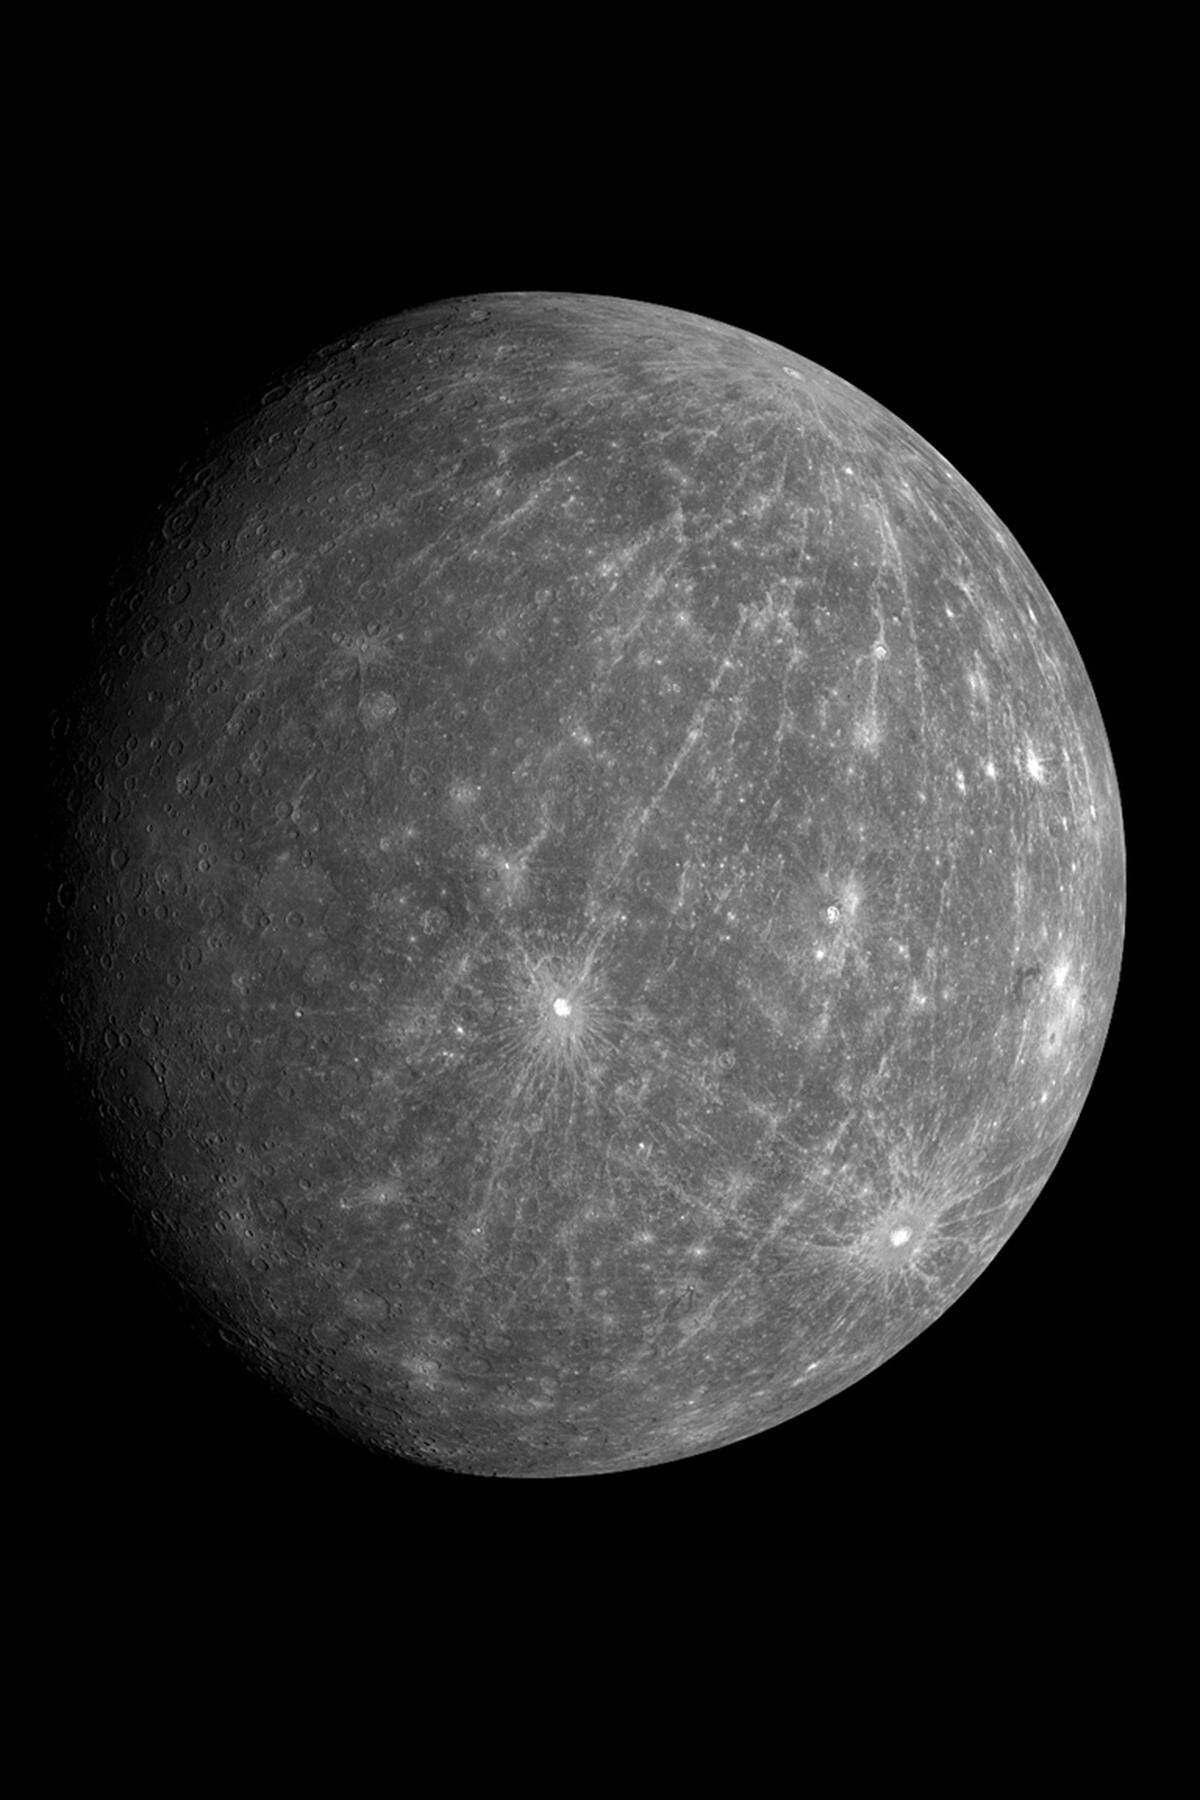 Merkur ist der Jahresregent 2012. Jahresregenten können Sonne, Mond, Merkur, Venus, Mars, Jupiter und Saturn sein. Einst glaubte man, die Jahresregenten würden die Großwetterlage im jeweiligen Jahr bestimmen. Aus Tradition wird immer noch für jedes neue Jahr der jeweilige Planetenregent angegeben. Auf Kalendermünzen und in manchen Kalenderschriften ist er abgebildet.